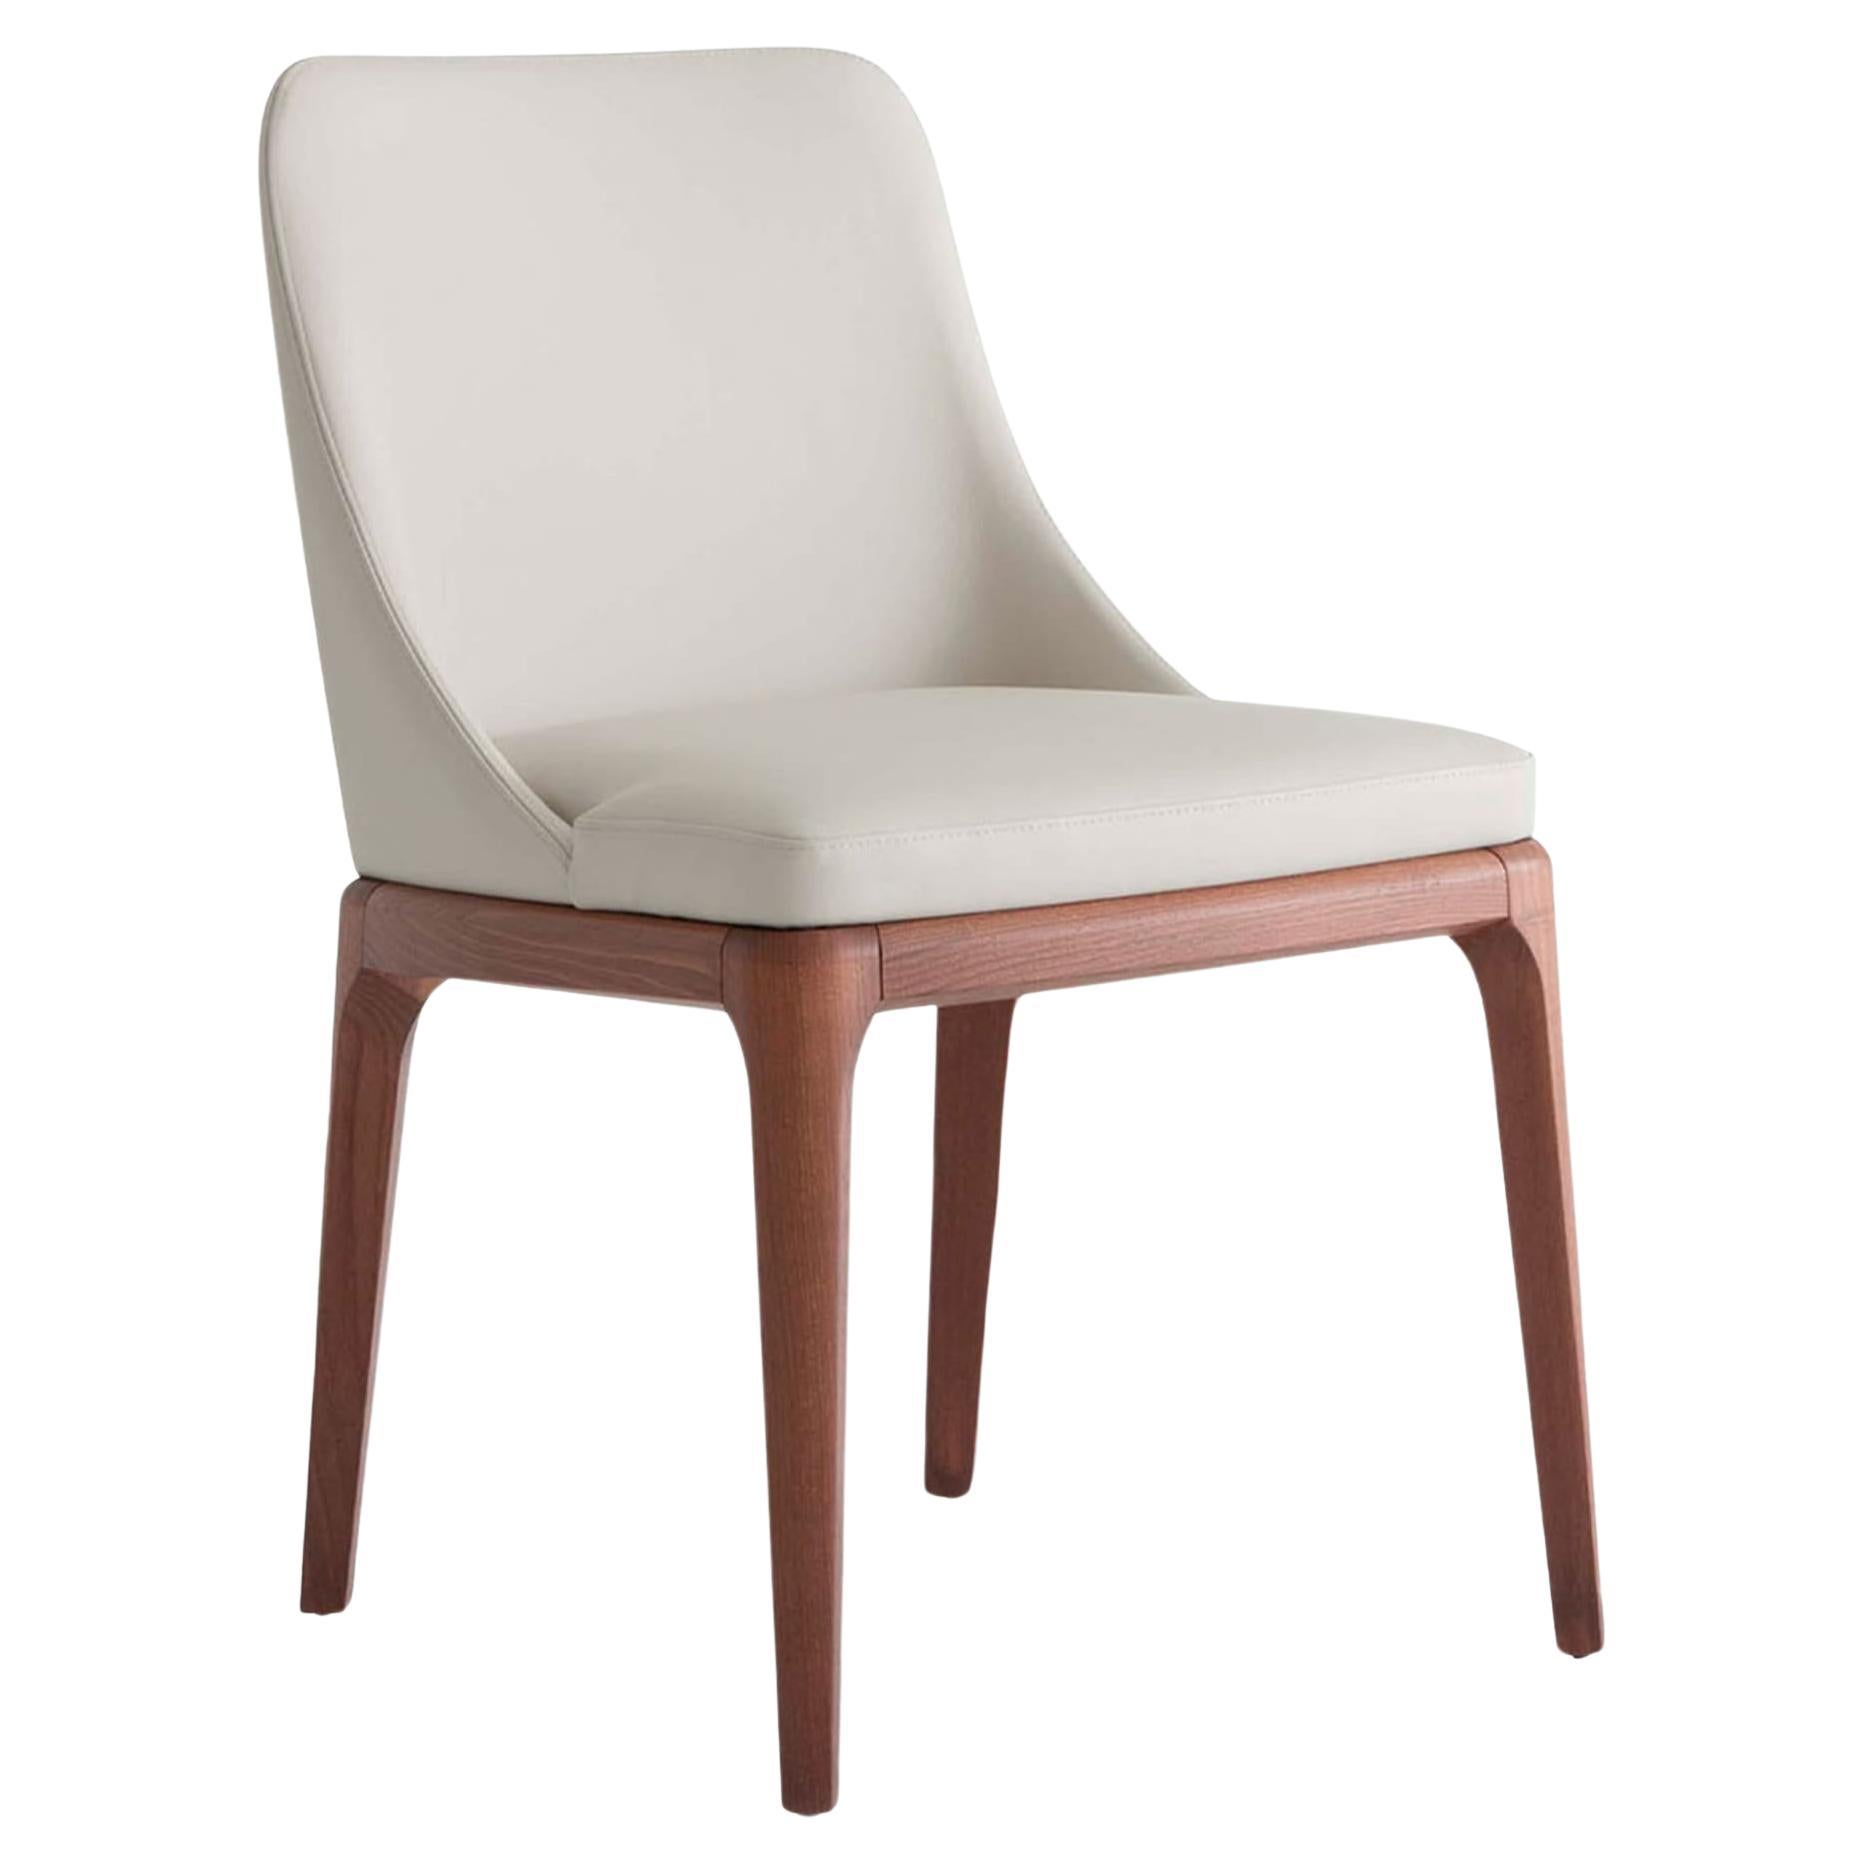 Antigona White Leather Chair For Sale